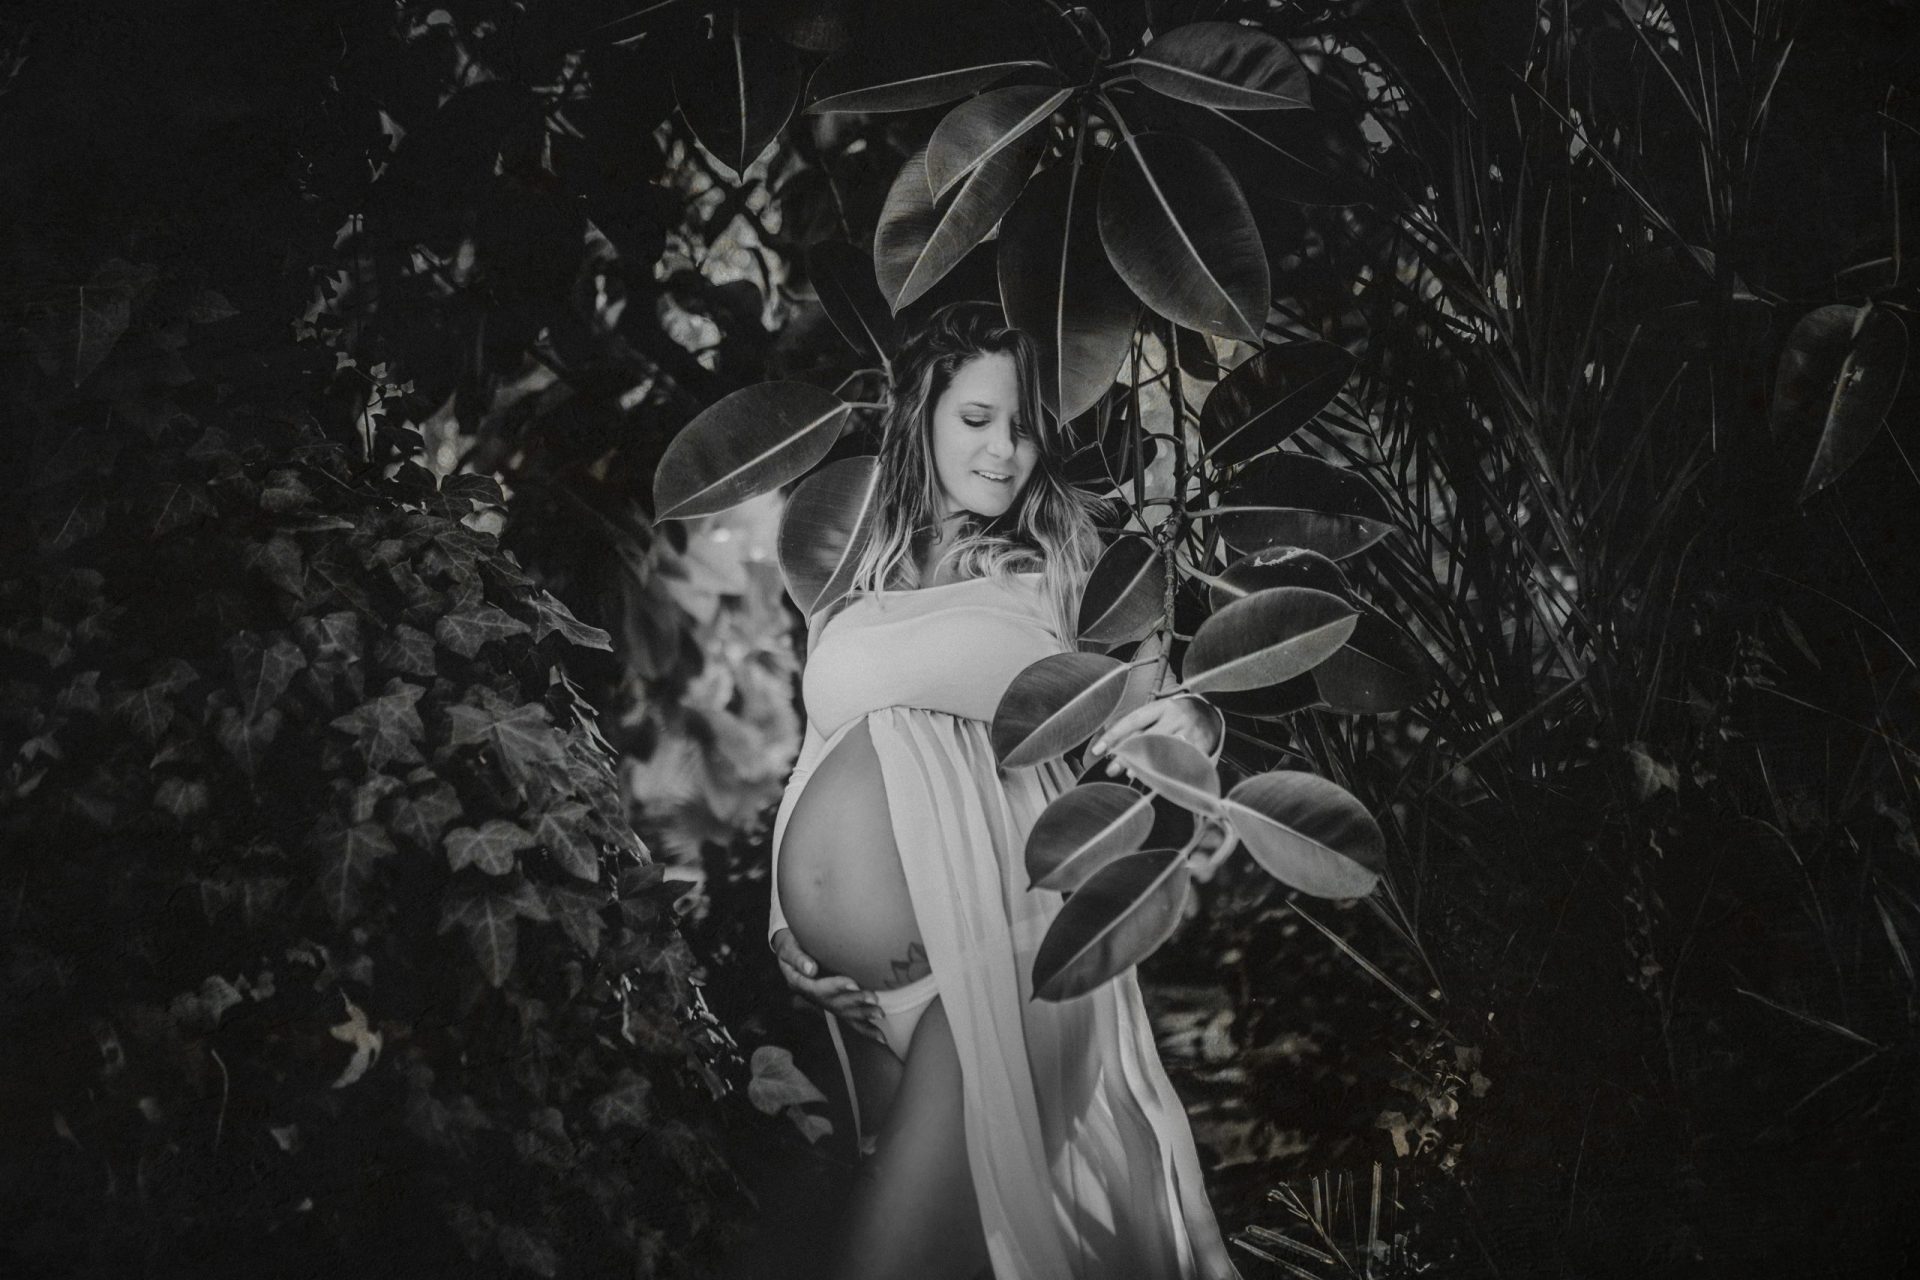 Fotografía en blanco y negro de una mujer embarazada entre plantas del bosque